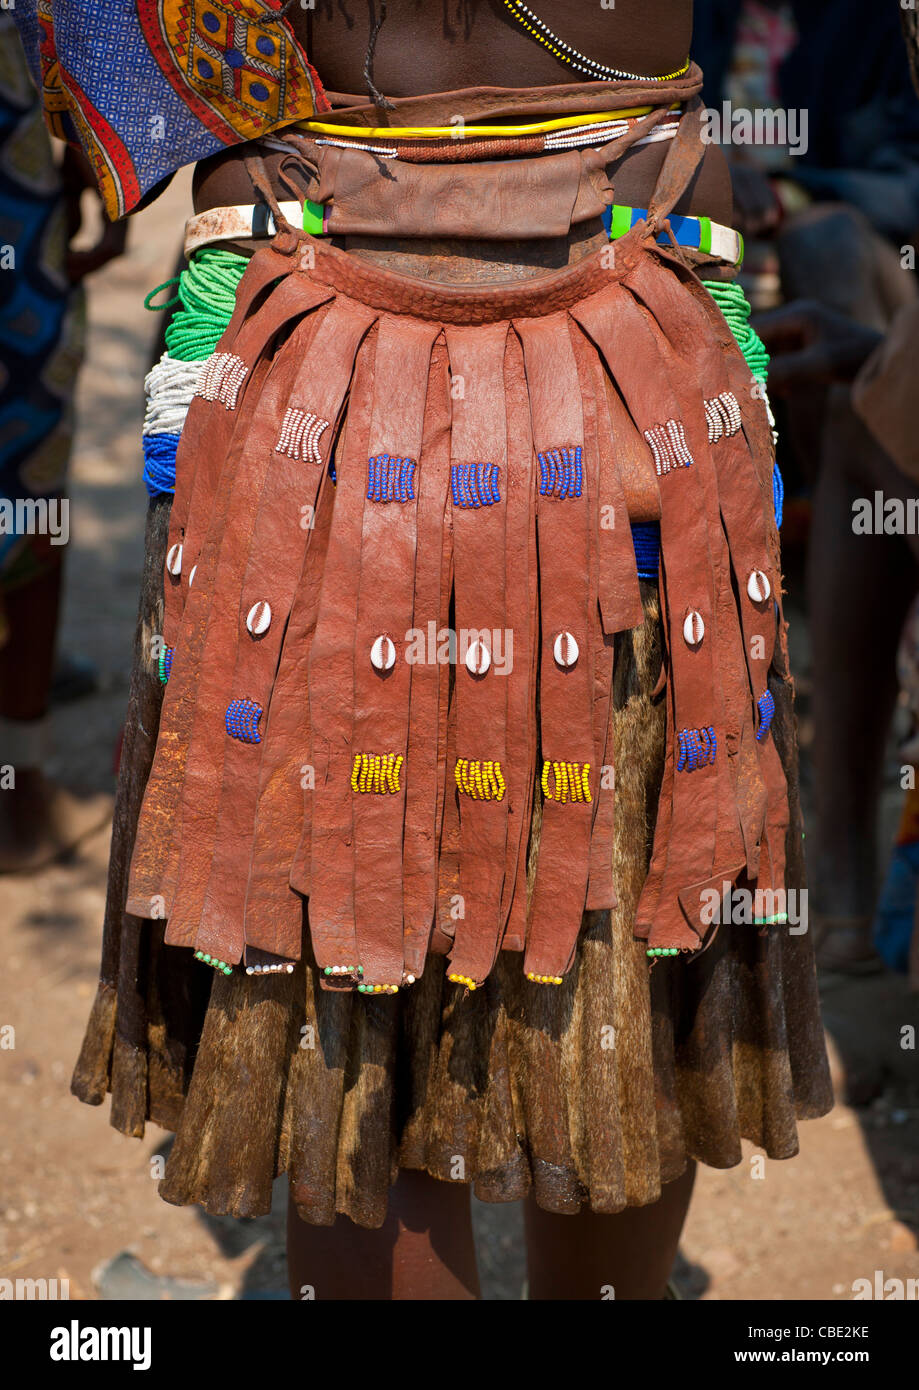 Apron of a Mucawana woman, village of Soba, Angola Stock Photo